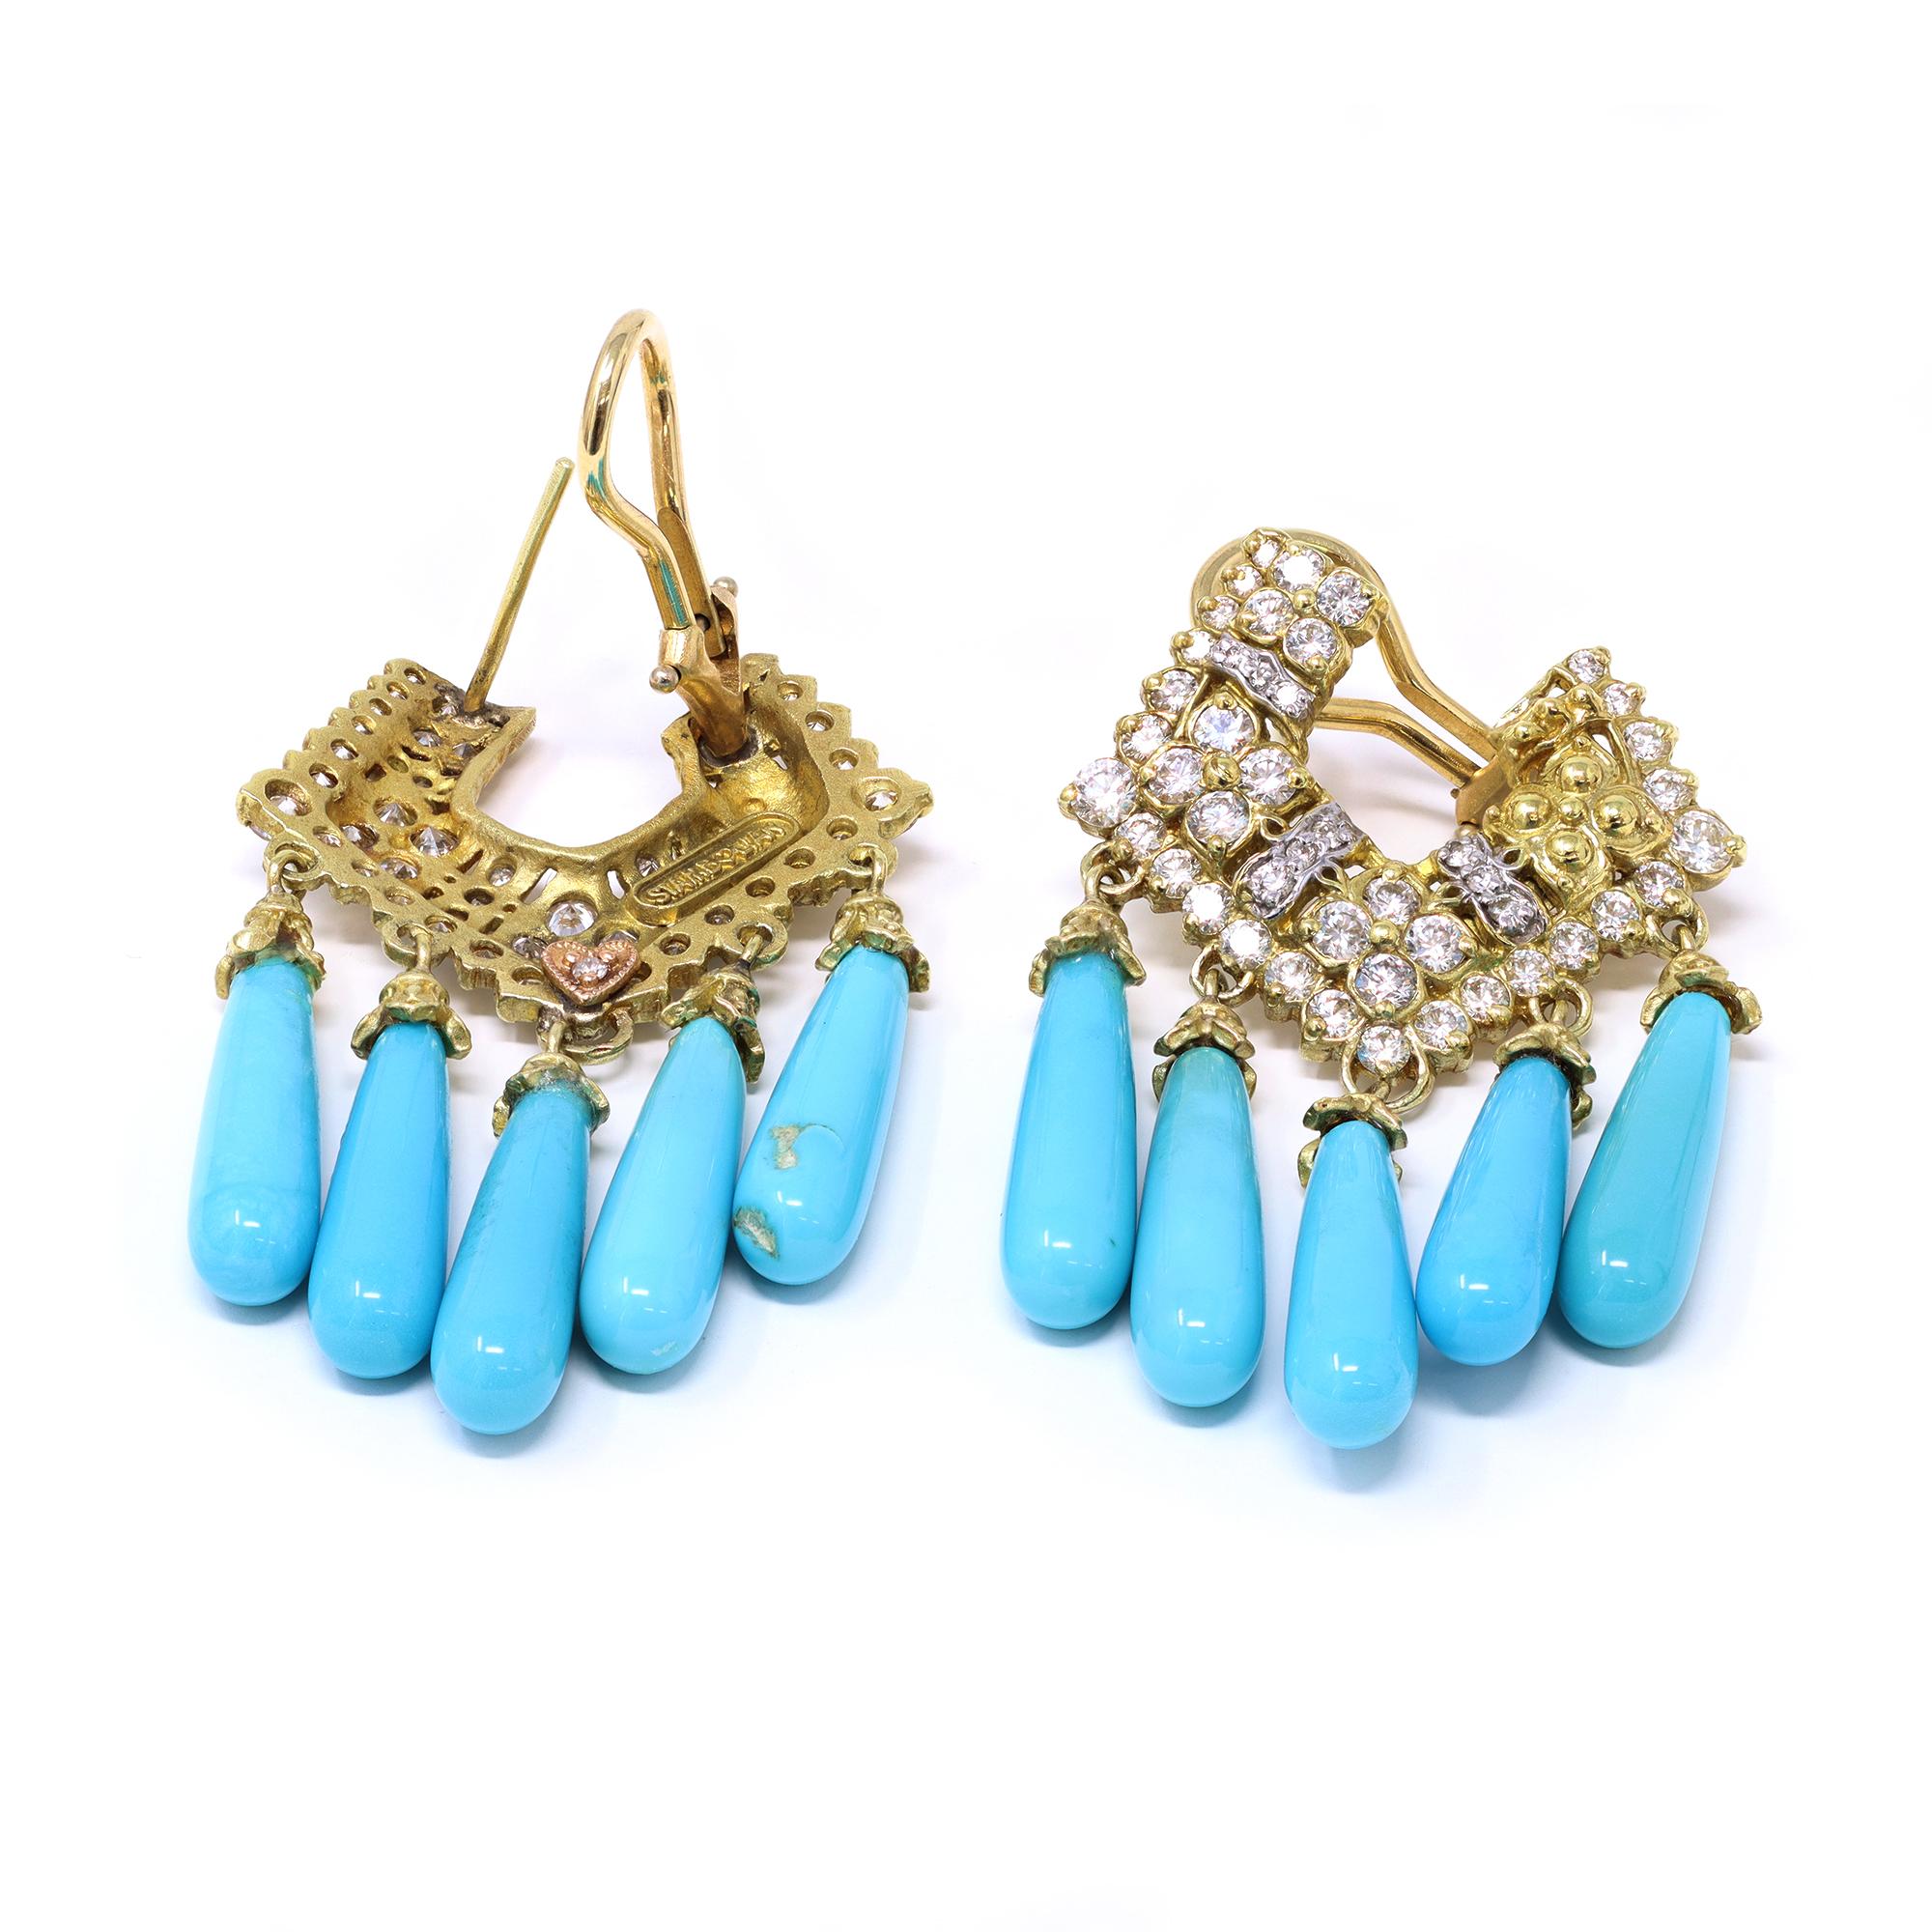 Paire de clips d'oreilles en turquoise et diamants signés Stambolian. Les boucles d'oreilles chandelier sont exécutées avec talent en or jaune 18 carats, de fabrication américaine. Les boucles d'oreilles contiennent 1,60 carats d'excellents diamants